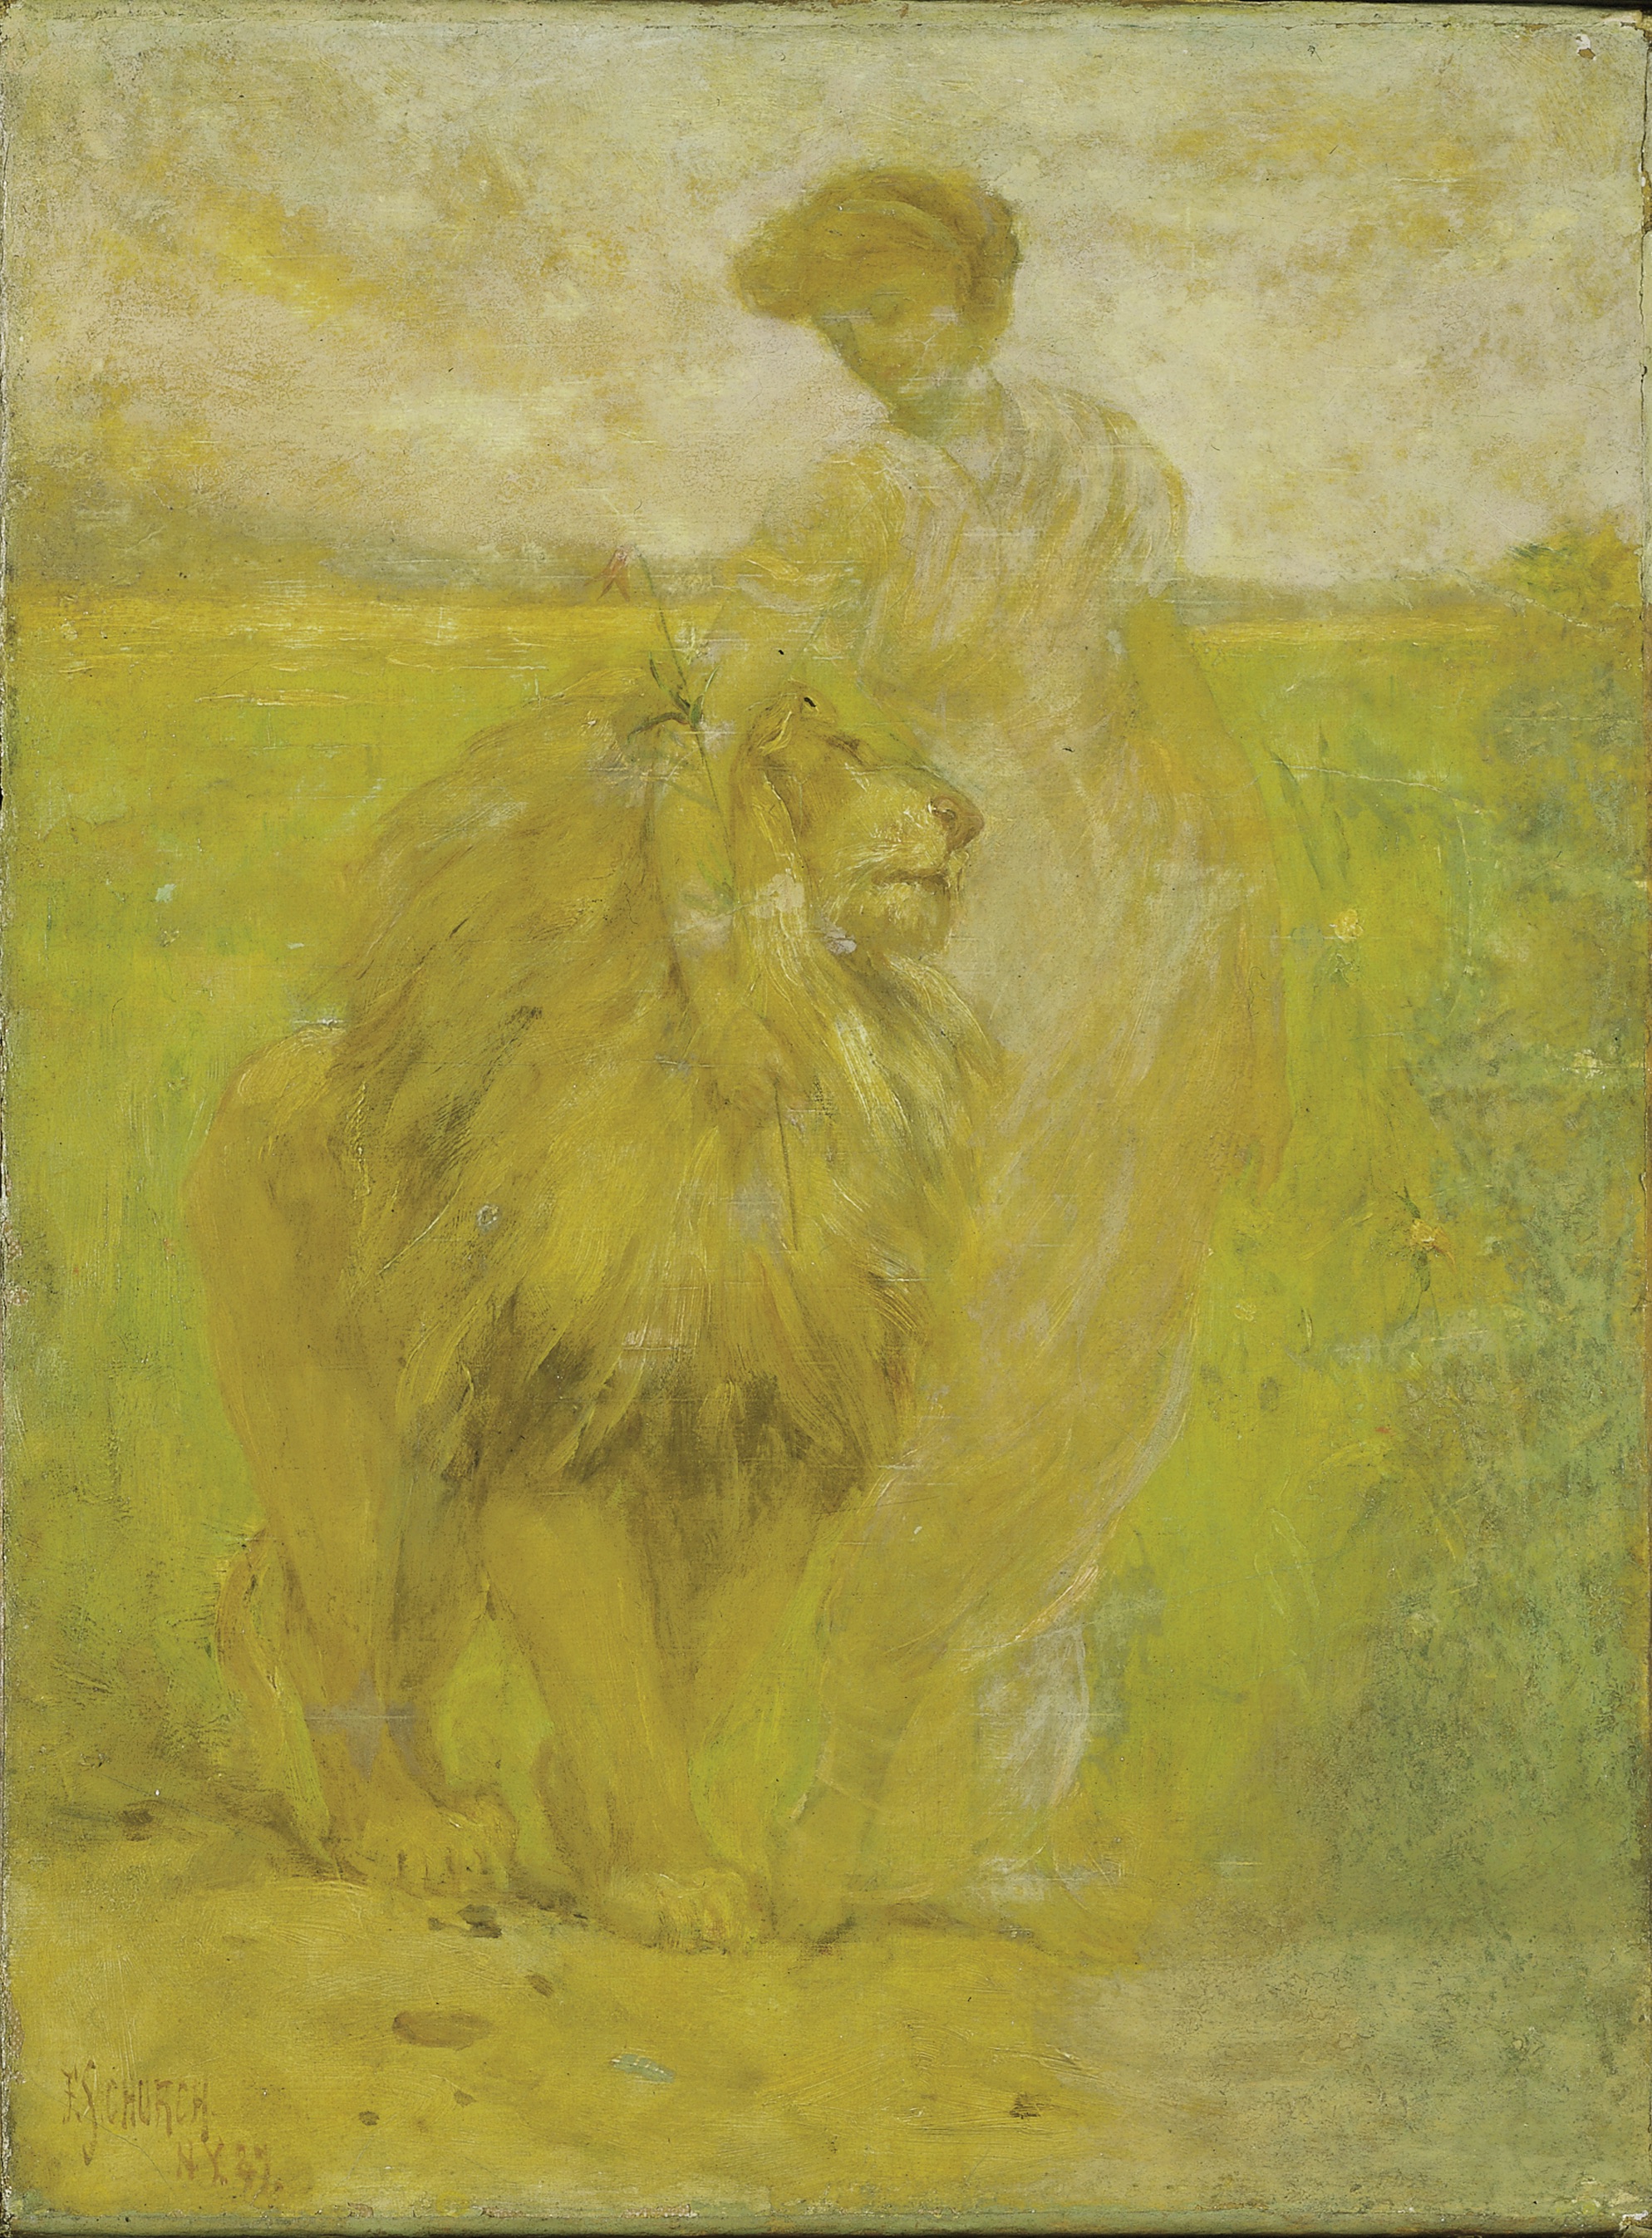 Κυριαρχία by Φρέντερικ Στιούαρτ Τσερτς - 1887 - 40.9 x 30.4 cm 